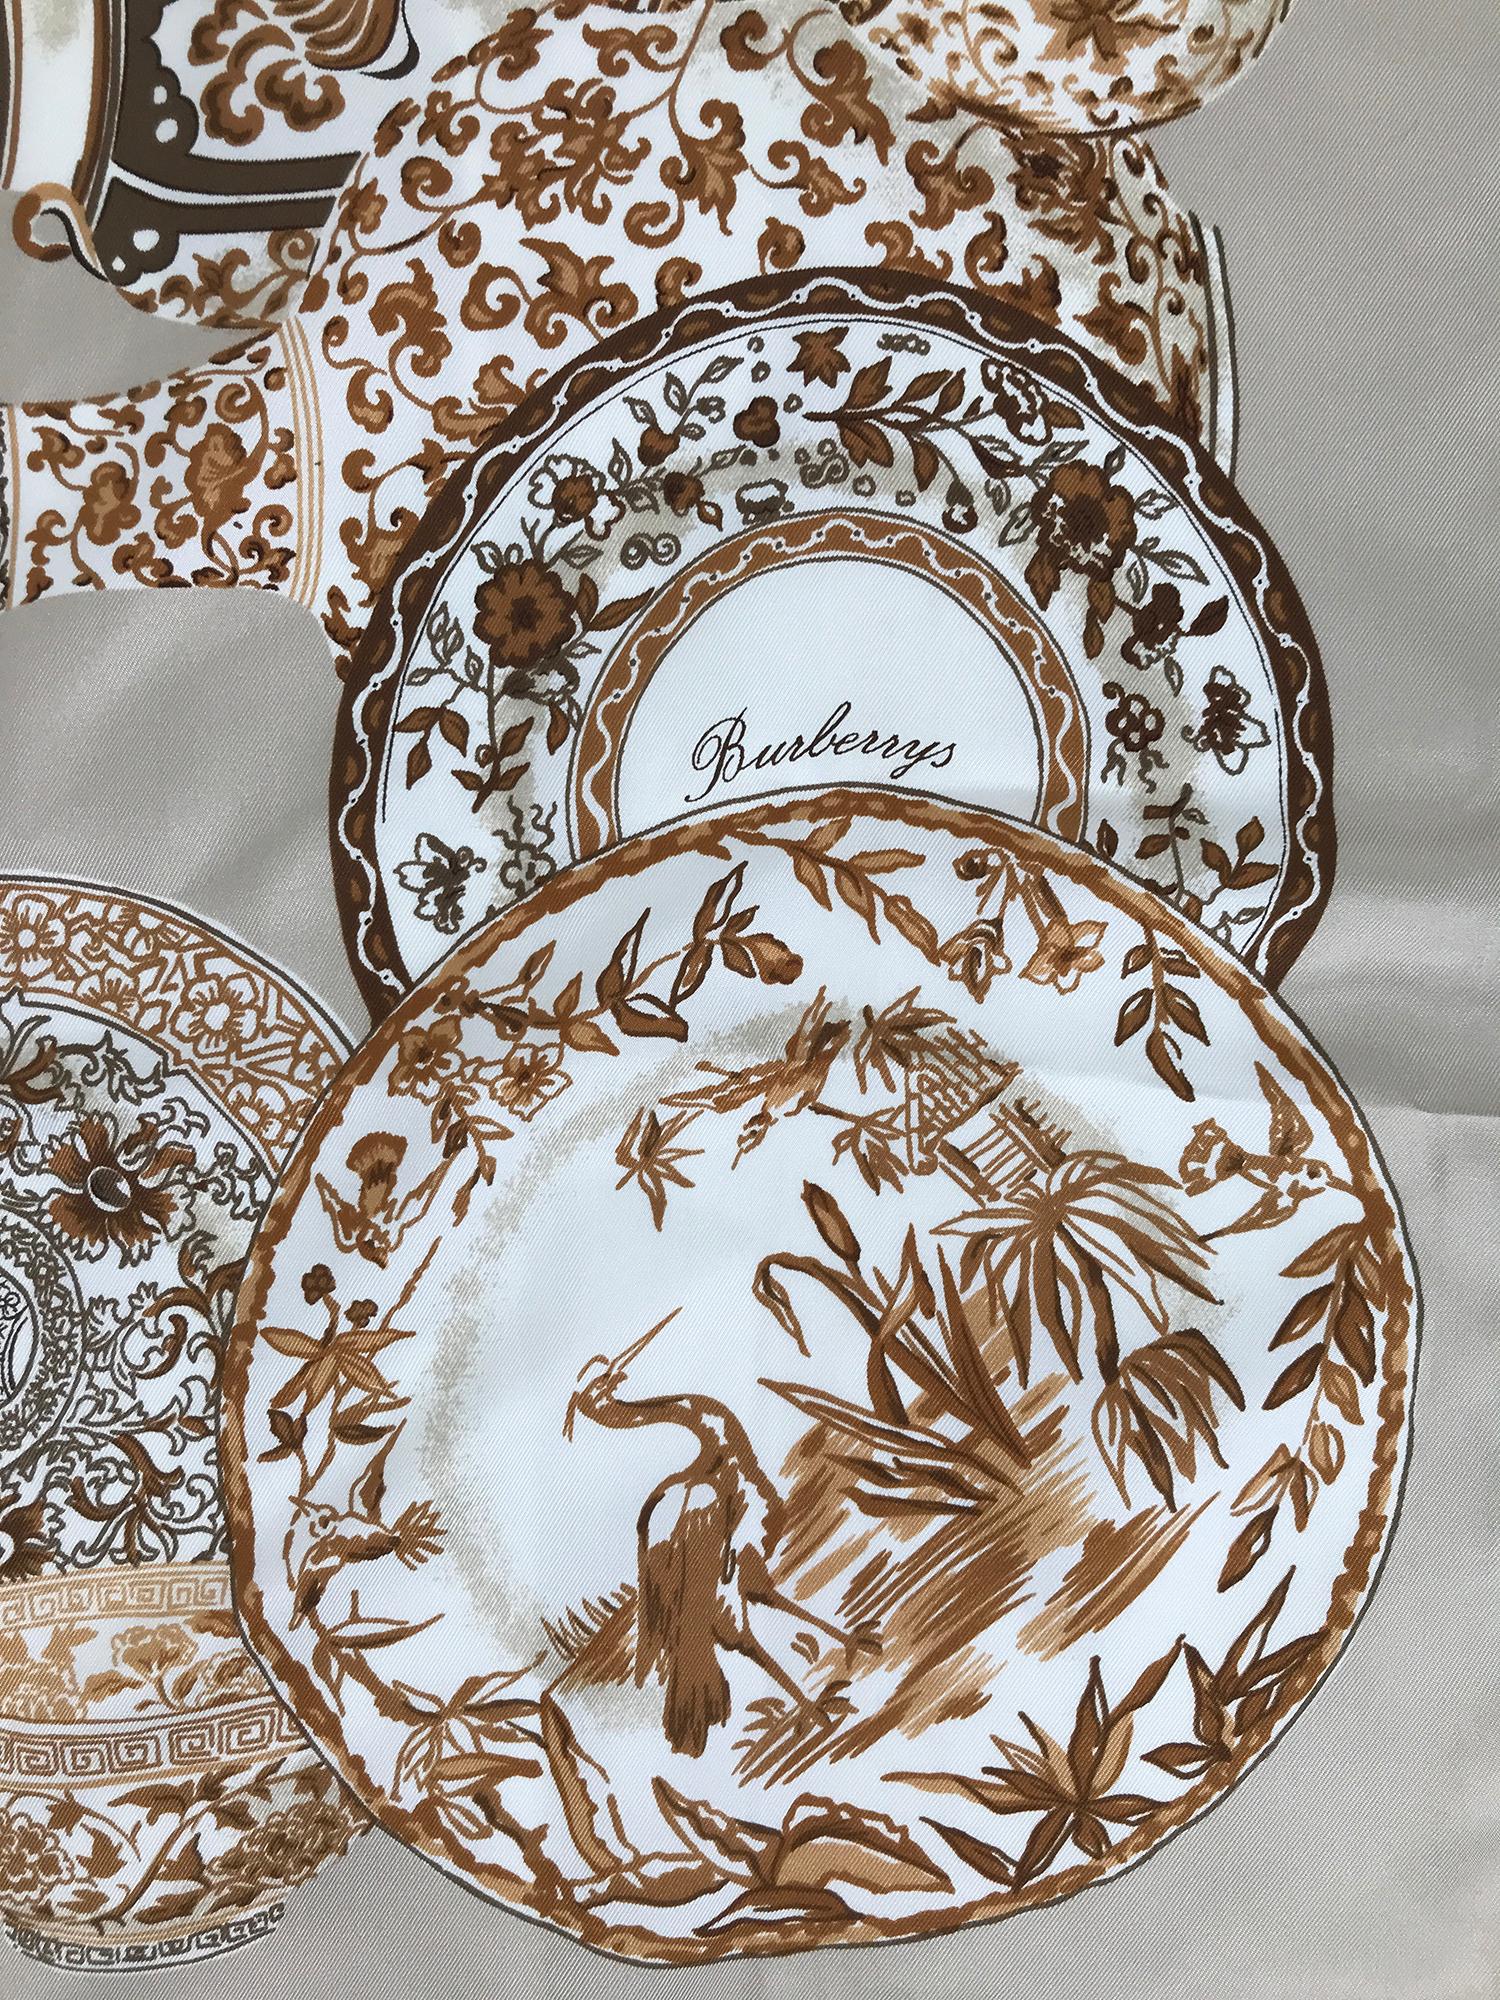 Burberry Seidenschal das Design ist Transfer-Ware Porzellan-Muster in Braun und Tans. Dieser schöne Schal hat einen tiefen Bordürenaufdruck mit verschiedenen Tellern und Vasen in viktorianischem Transferware-Design. Der Druck ist signiert. In